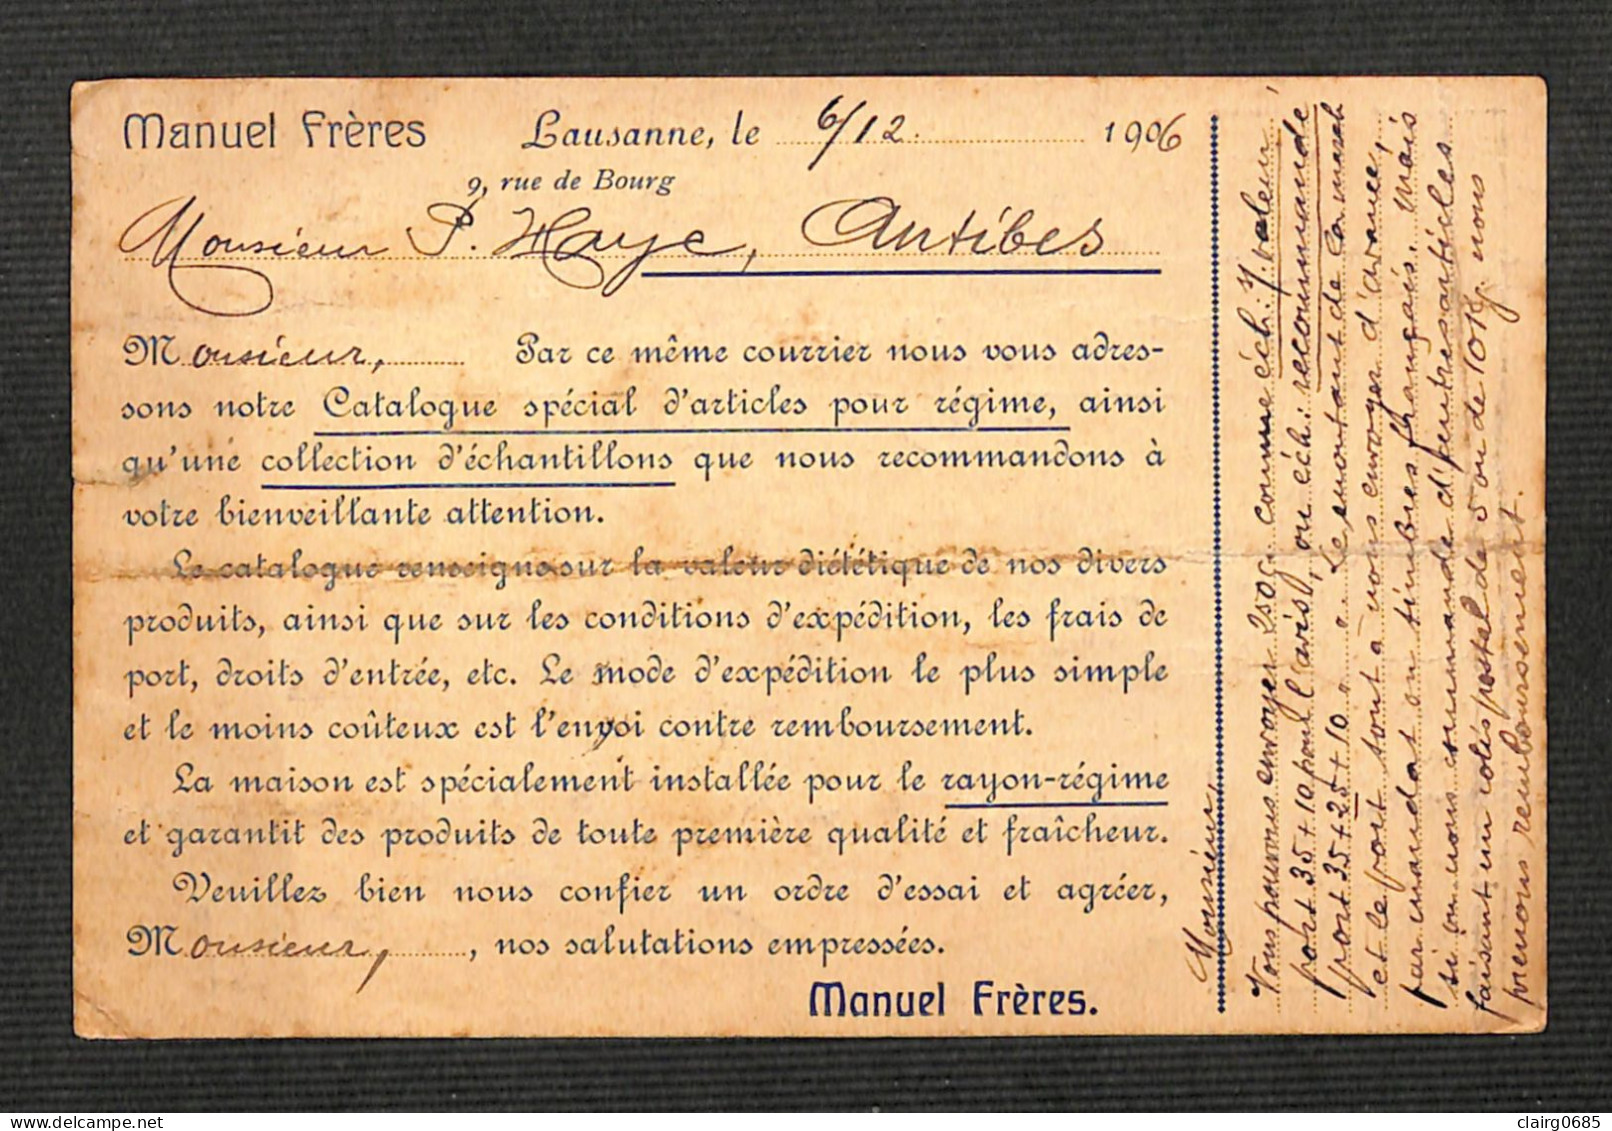 SUISSE - LAUSANNE - PUB - MANUEL FRERES - Maison Spéciale D'alimentation Pour Régime - 1906 - Lausanne